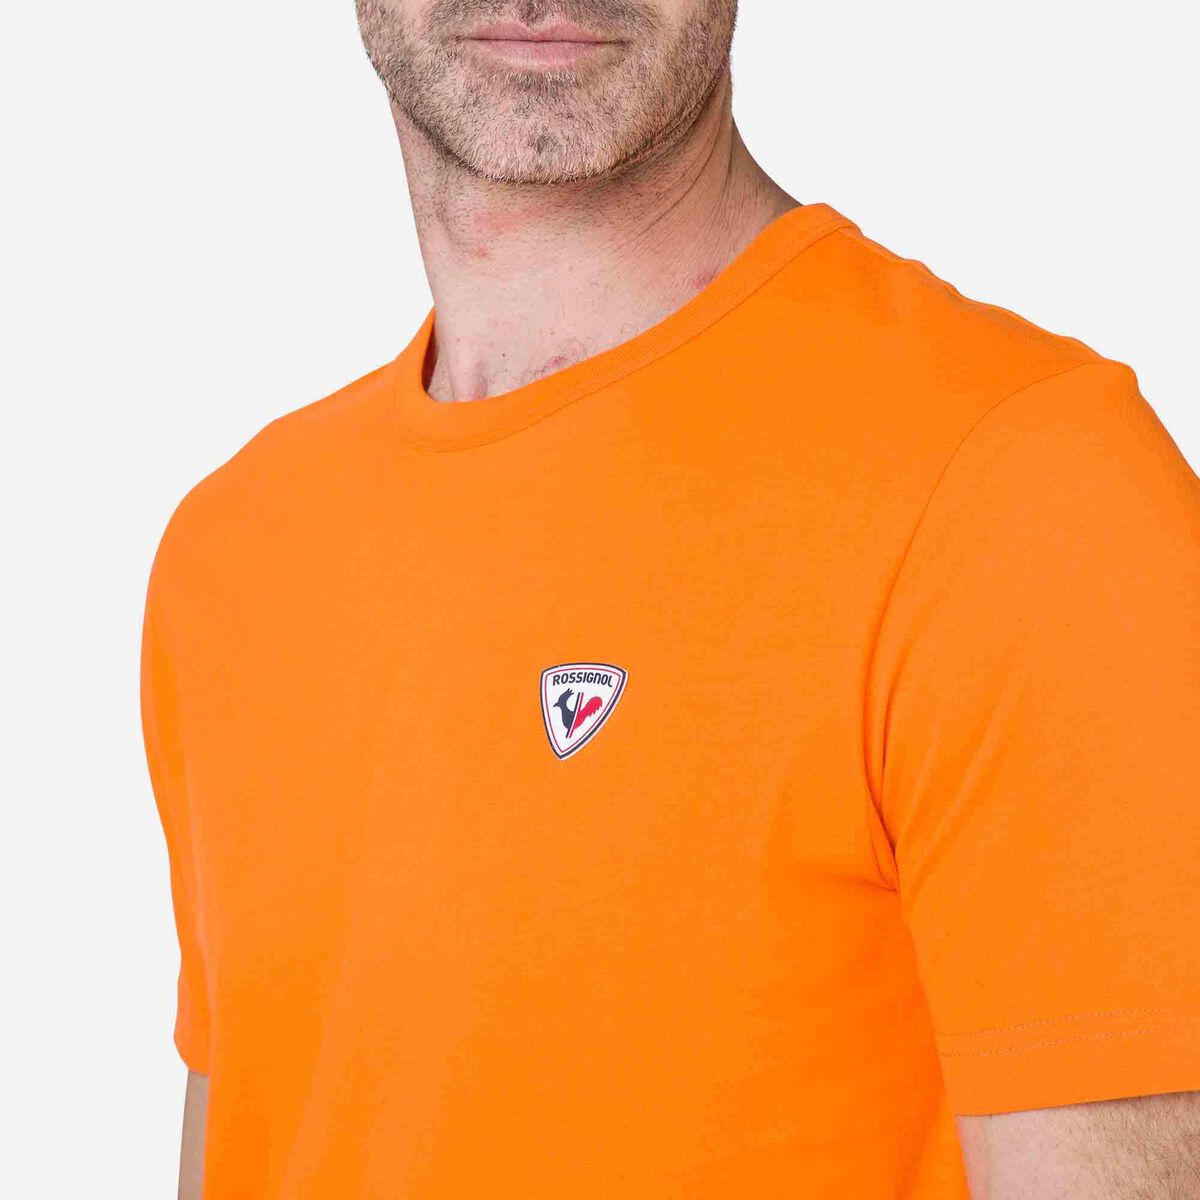 Rossignol Men's logo plain tee Orange